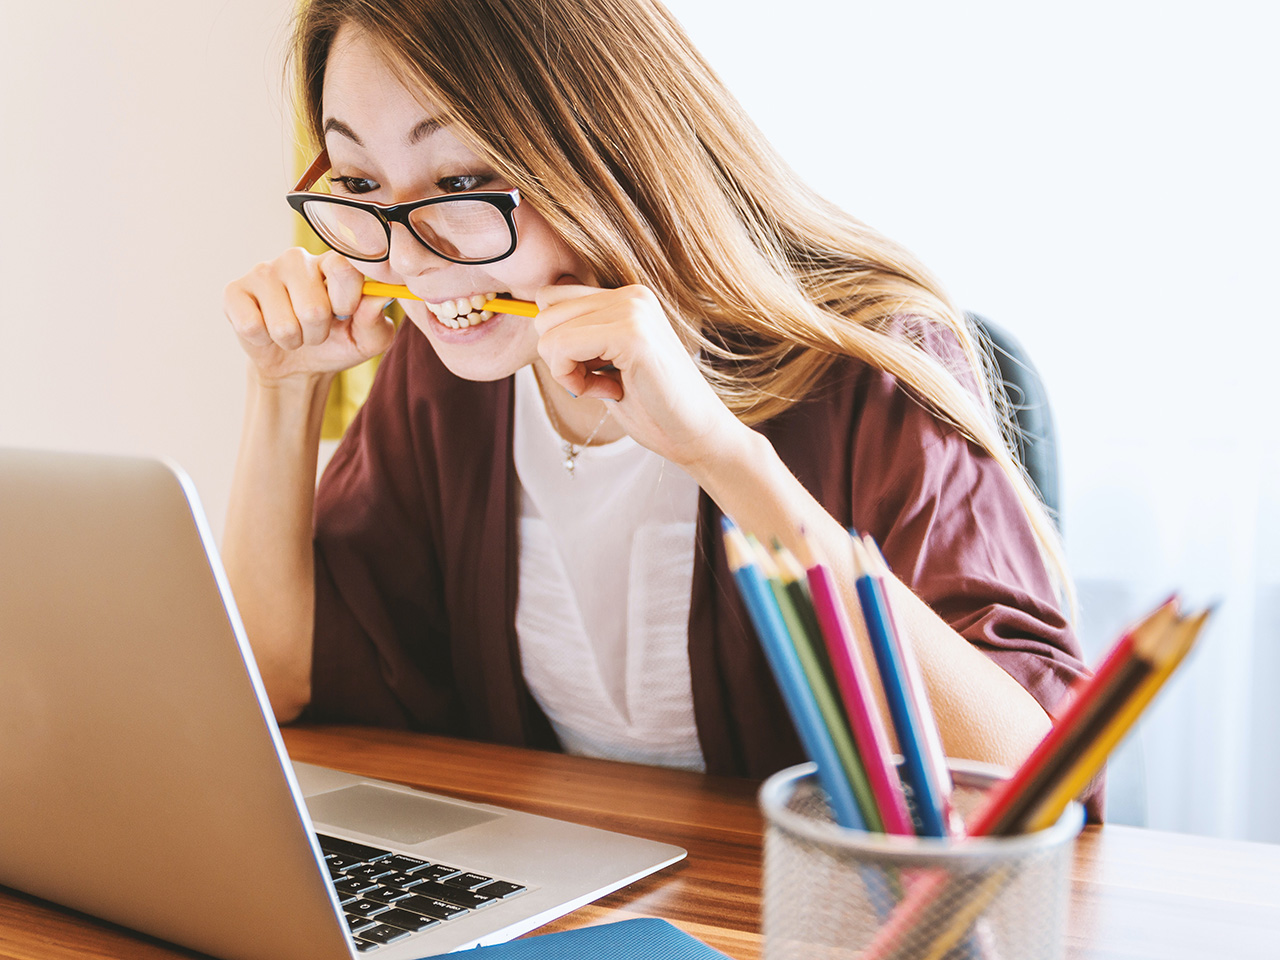 En kvinna sitter vid en laptop och biter på en penna för att illustrera att hon är pepp eller frustrerad, fast med ett leende.